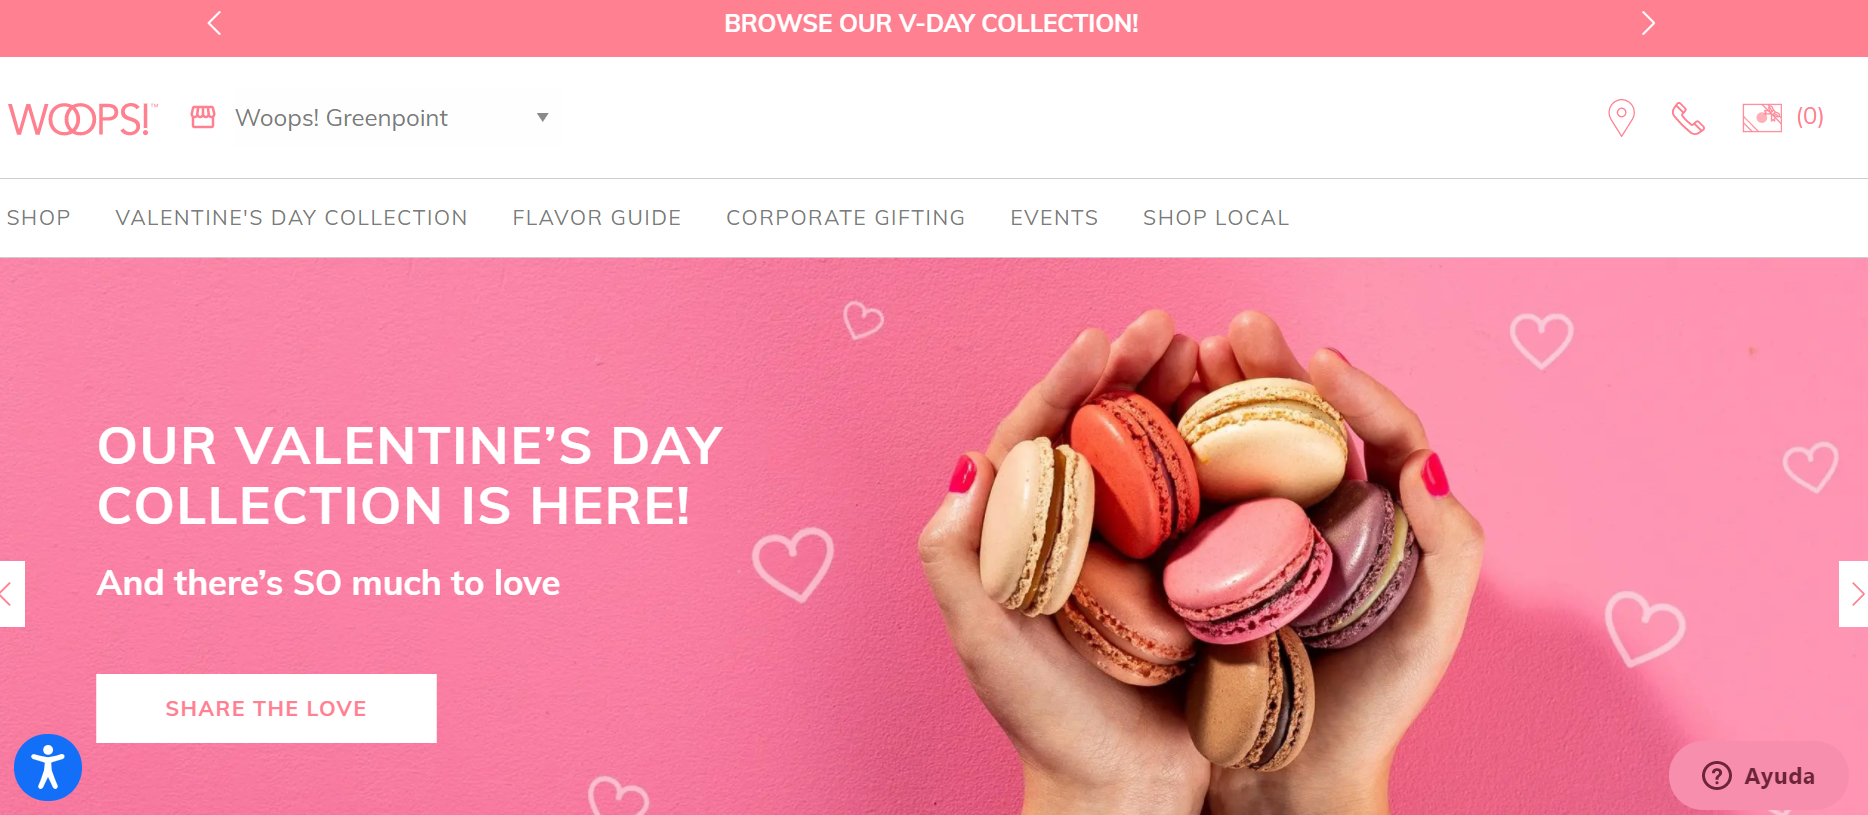 6 vibrantes ideas de marketing de última hora para San Valentín -  EmprendedorX